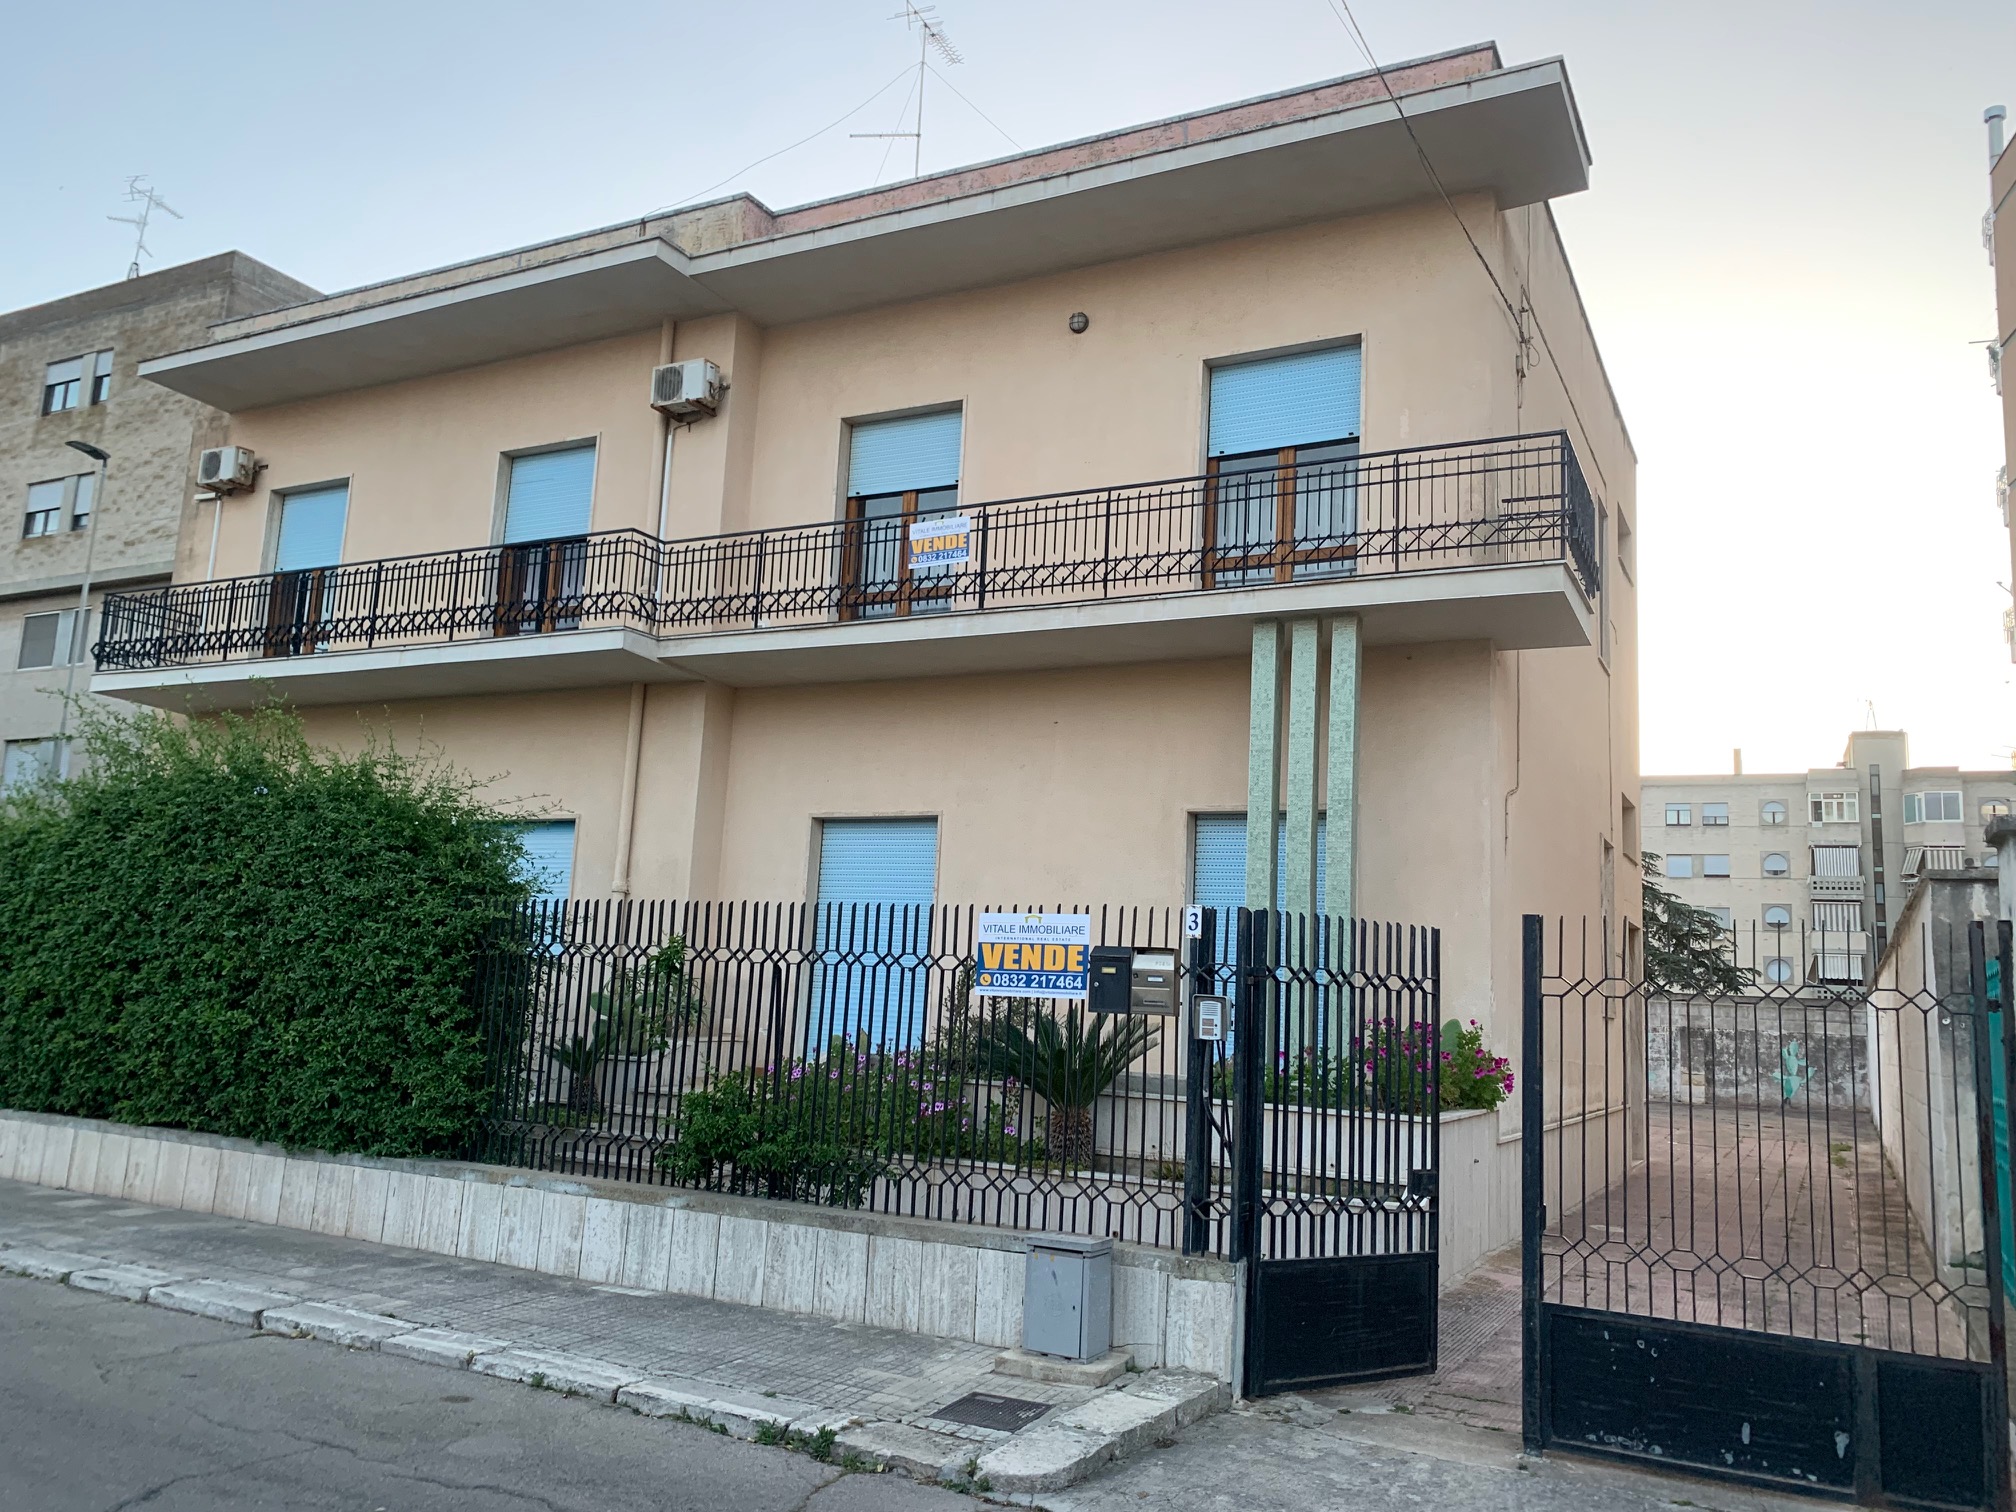 Splendido appartamento in vendita nel centro di Lecce, Via Maruggi (zona Circonvallazione).